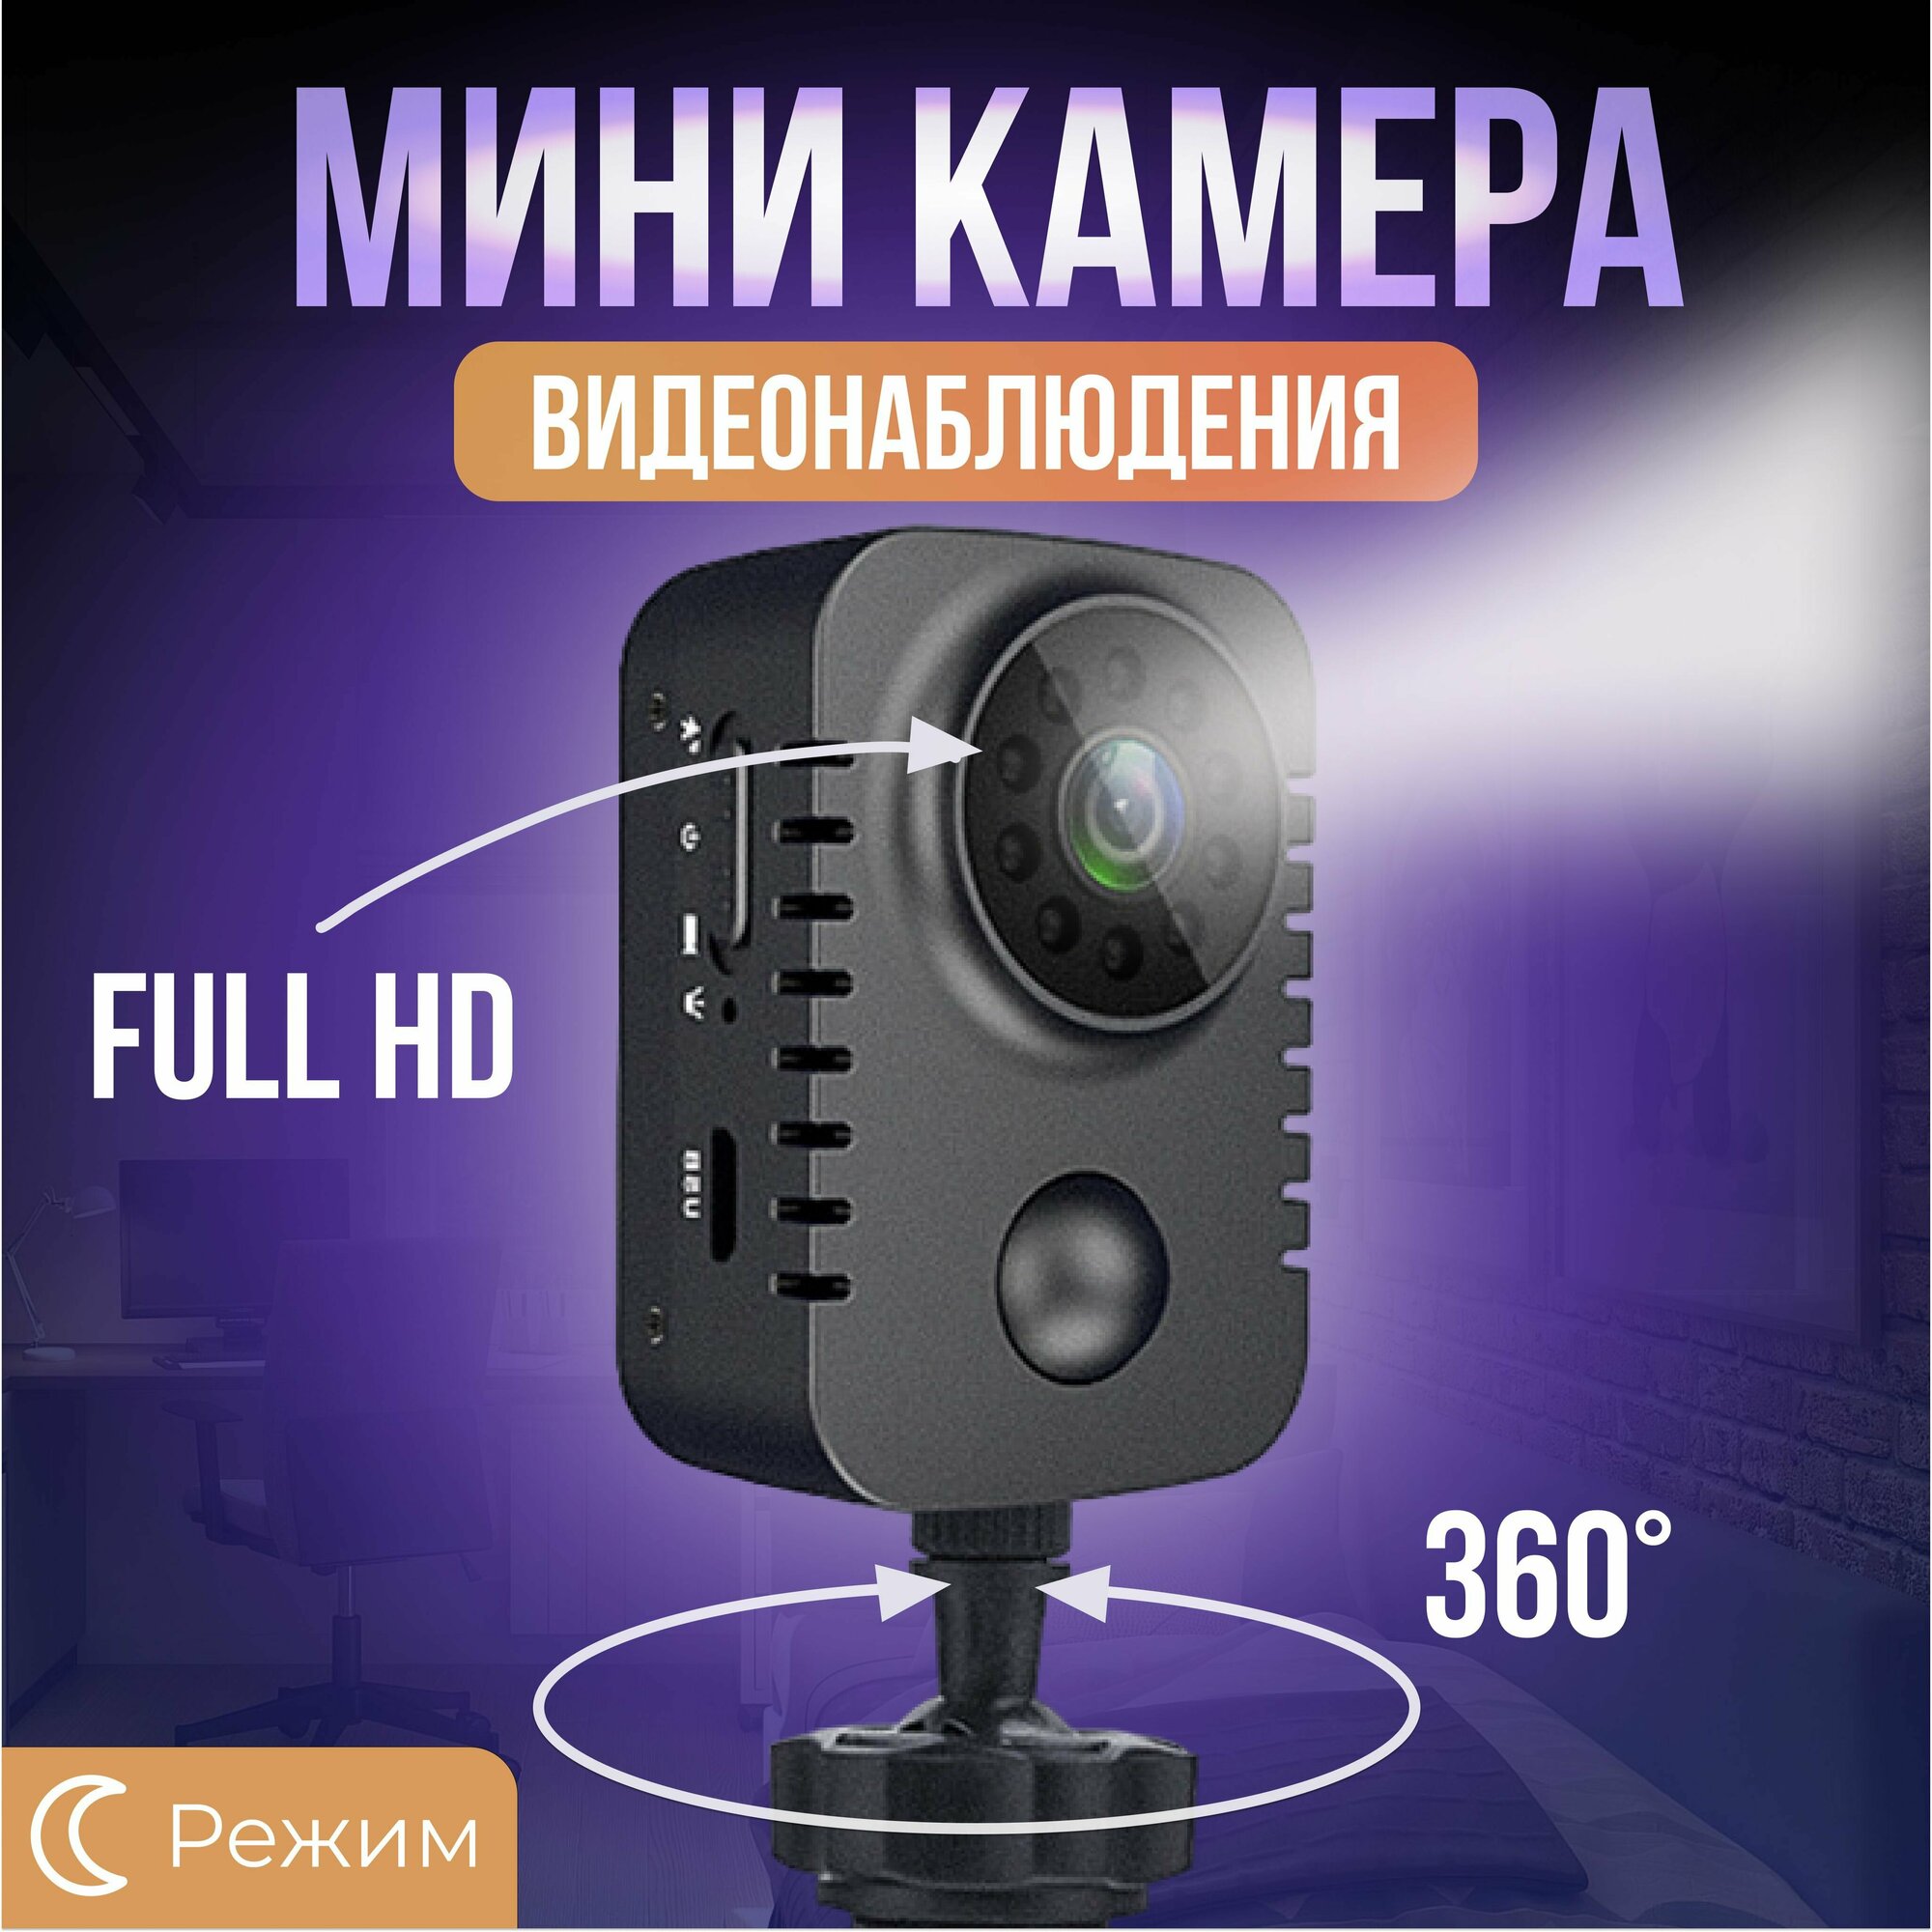 Онлайн камеры в реальном времени в Ульяновске